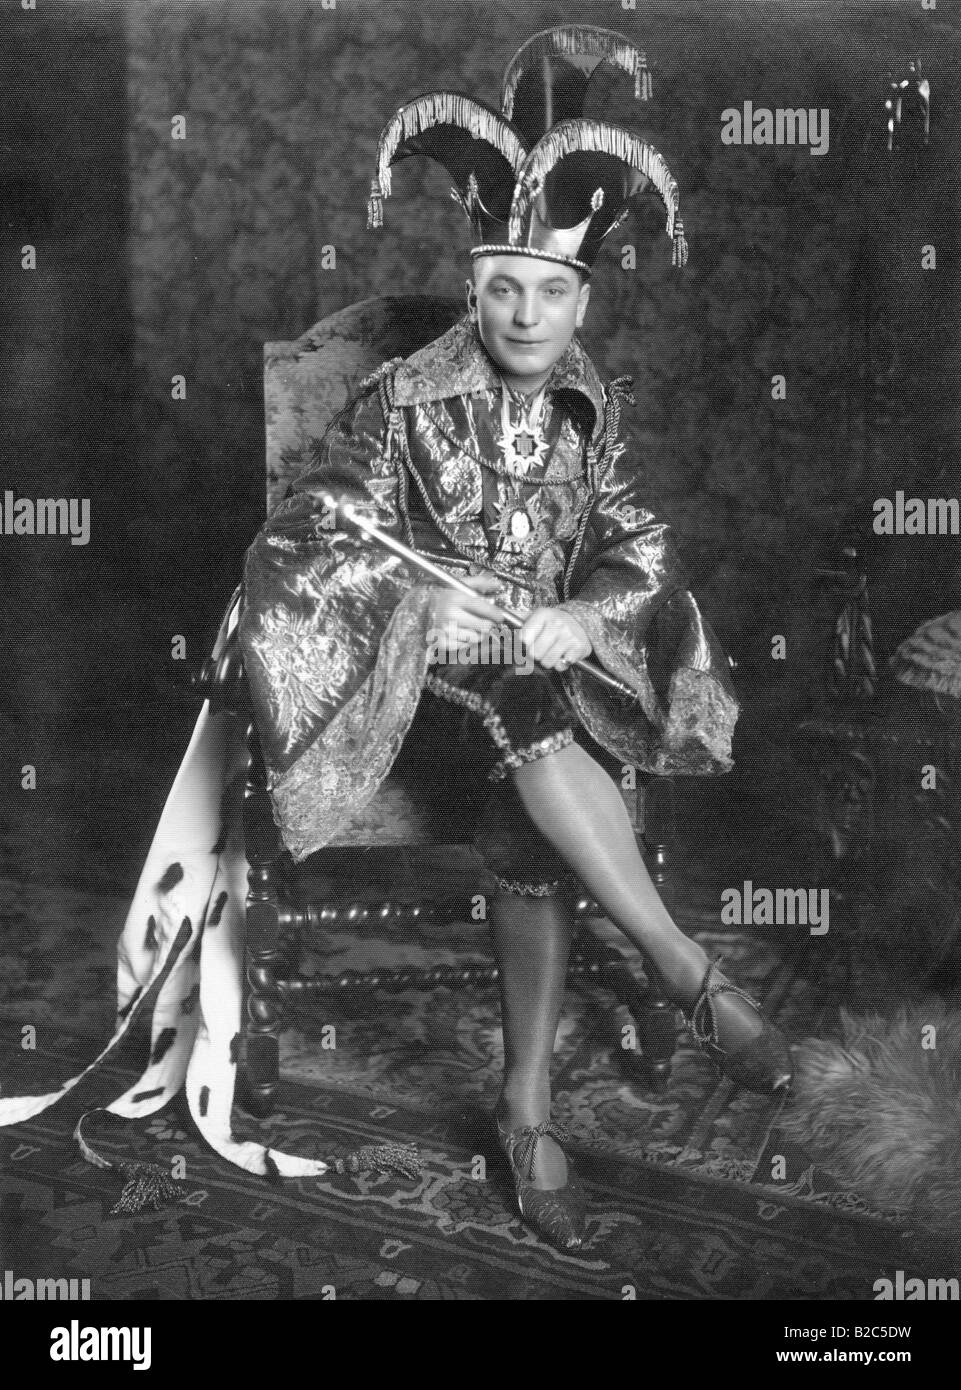 L'homme habillé en roi, photo historique d'environ 1920 Banque D'Images